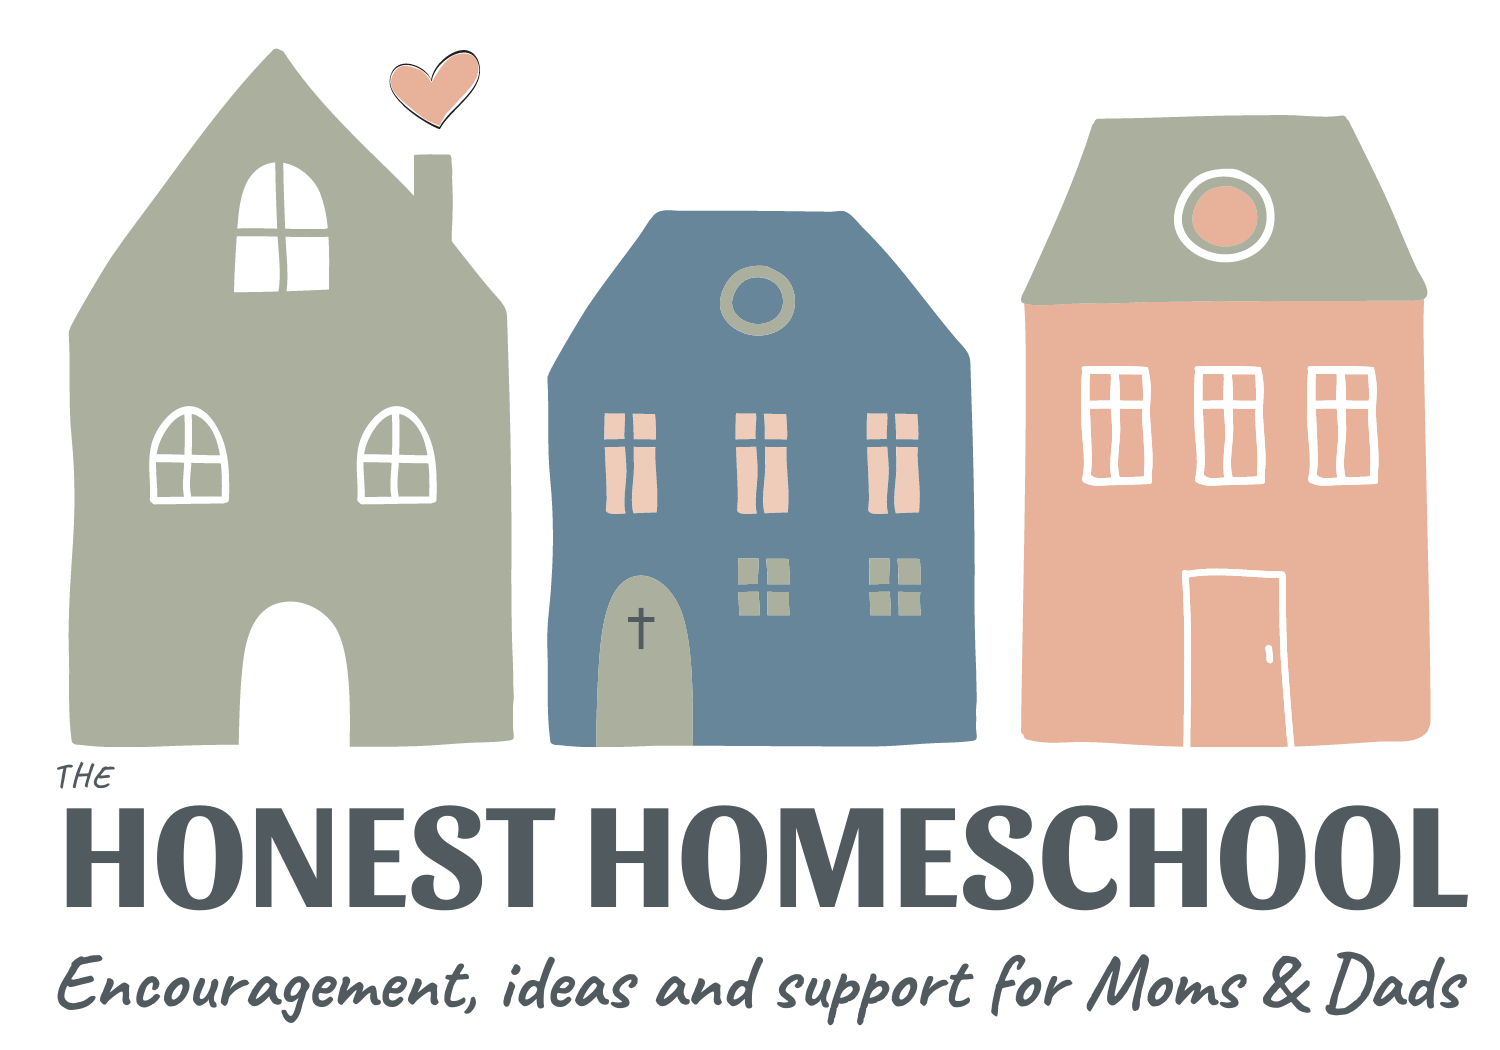 The Honest Homeschool